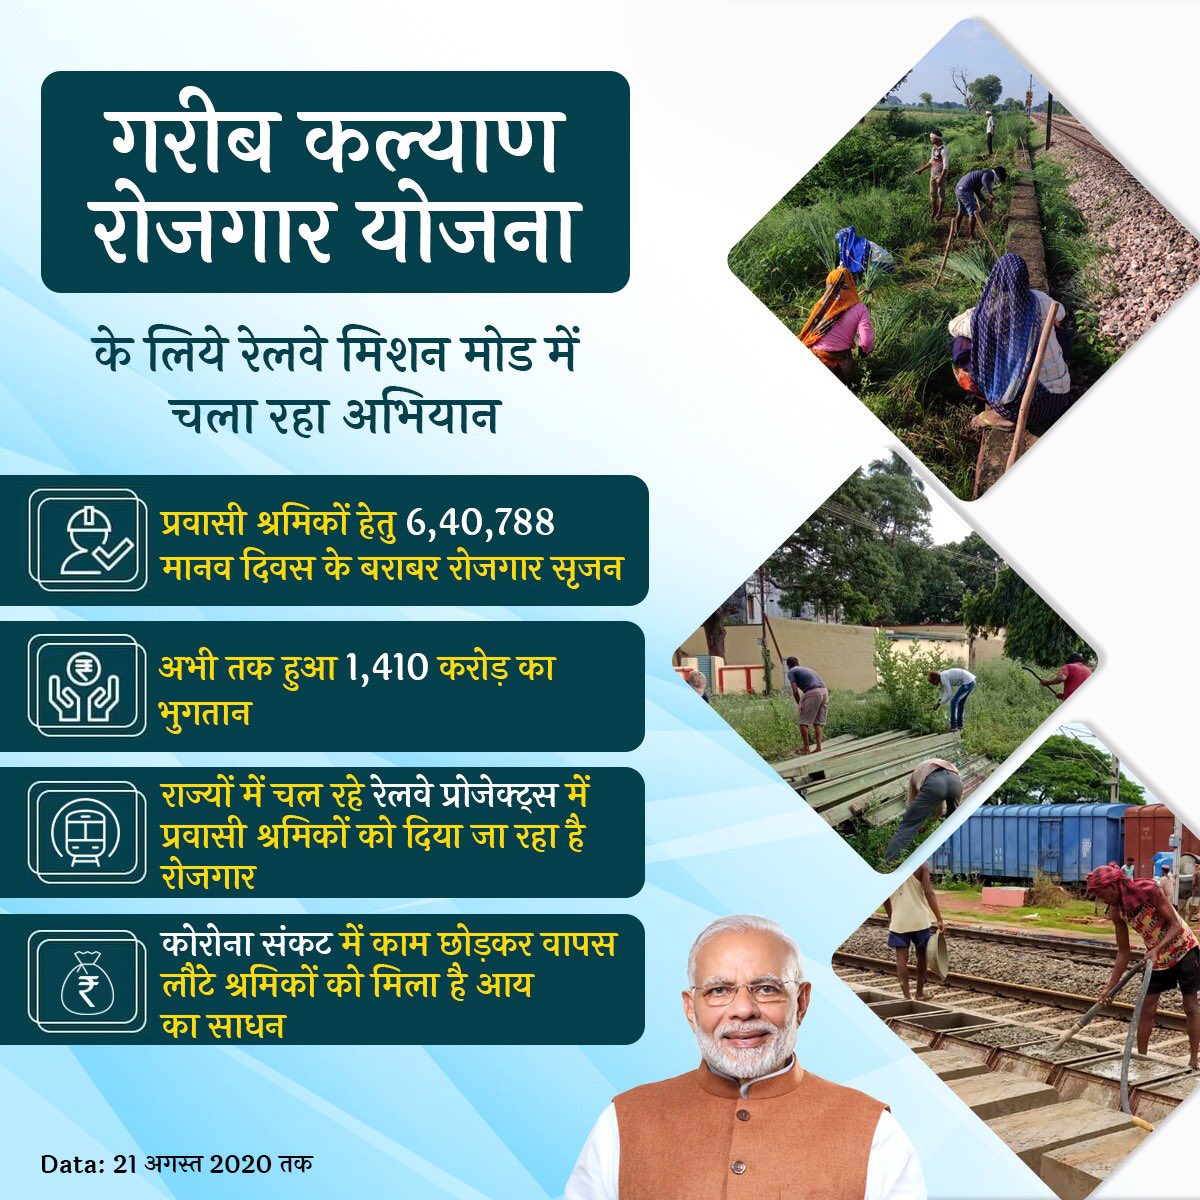 कोरोना संकट में PM @NarendraModi जी की #GaribKalyanRozgarYojana प्रवासी श्रमिकों के लिये एक वरदान बन कर आई है।

इसके तहत रेलवे द्वारा 6.4 लाख मानवदिवस के बराबर रोजगार सृजन कर ₹1,410 करोड़ का भुगतान भी किया जा चुका है।